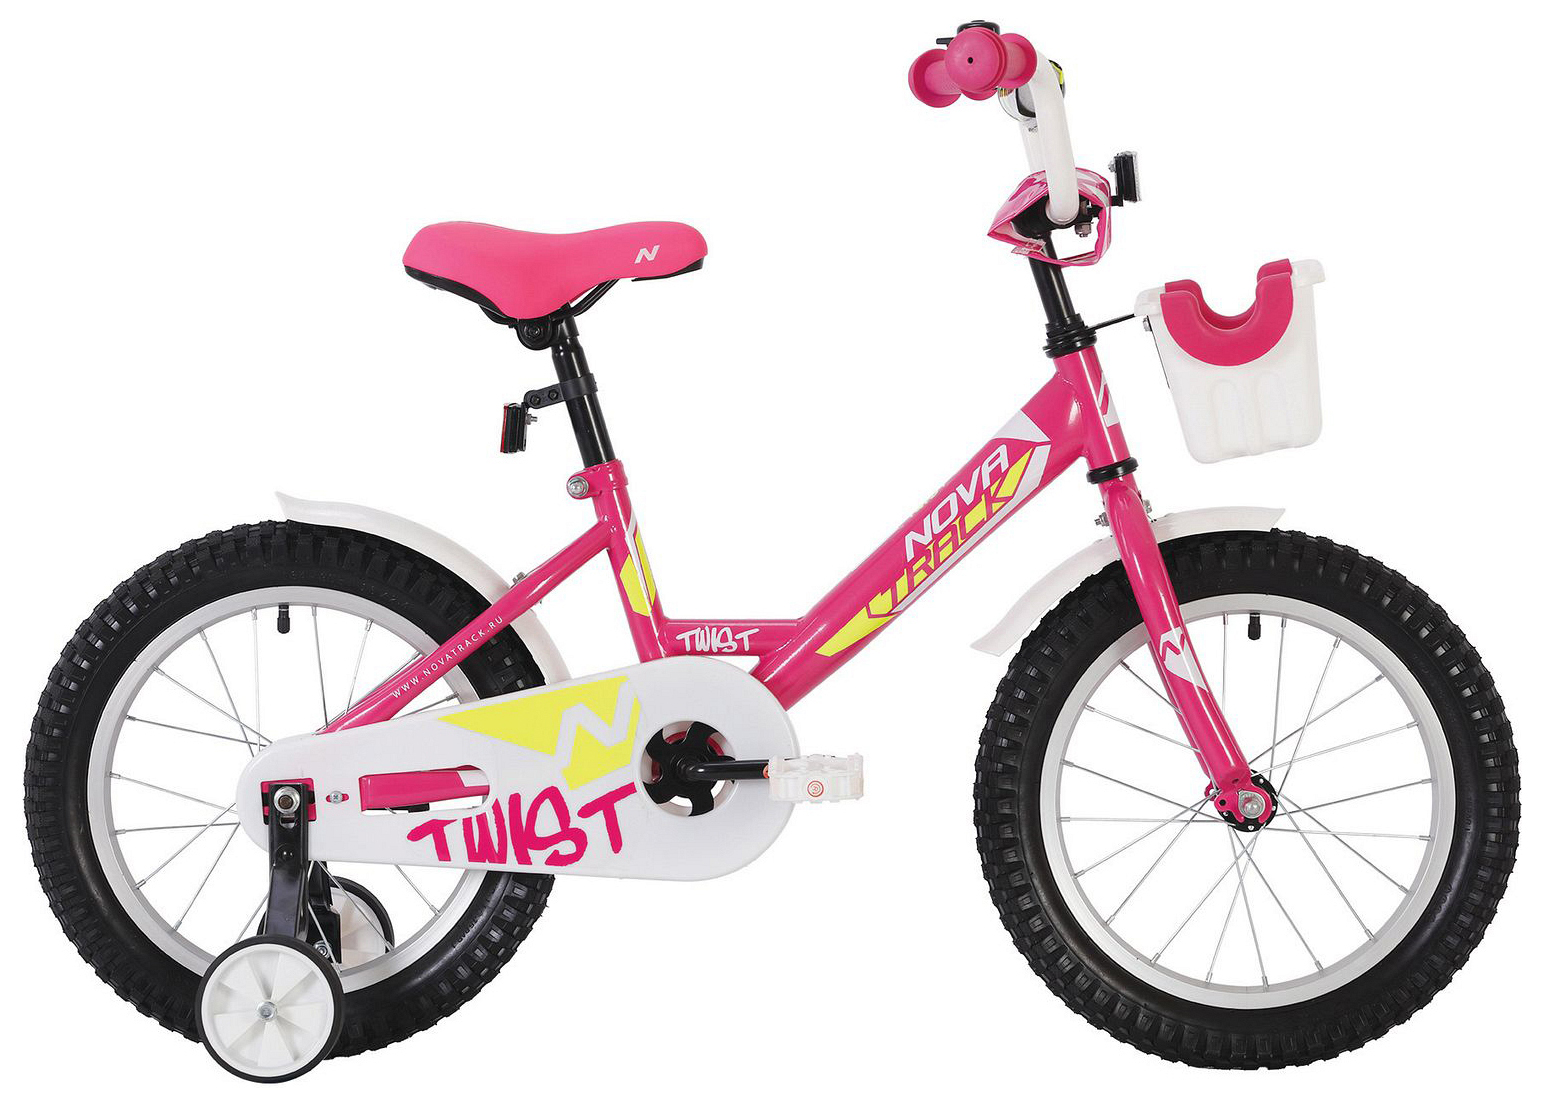  Отзывы о Детском велосипеде Novatrack Twist 18 с корзинкой 2020